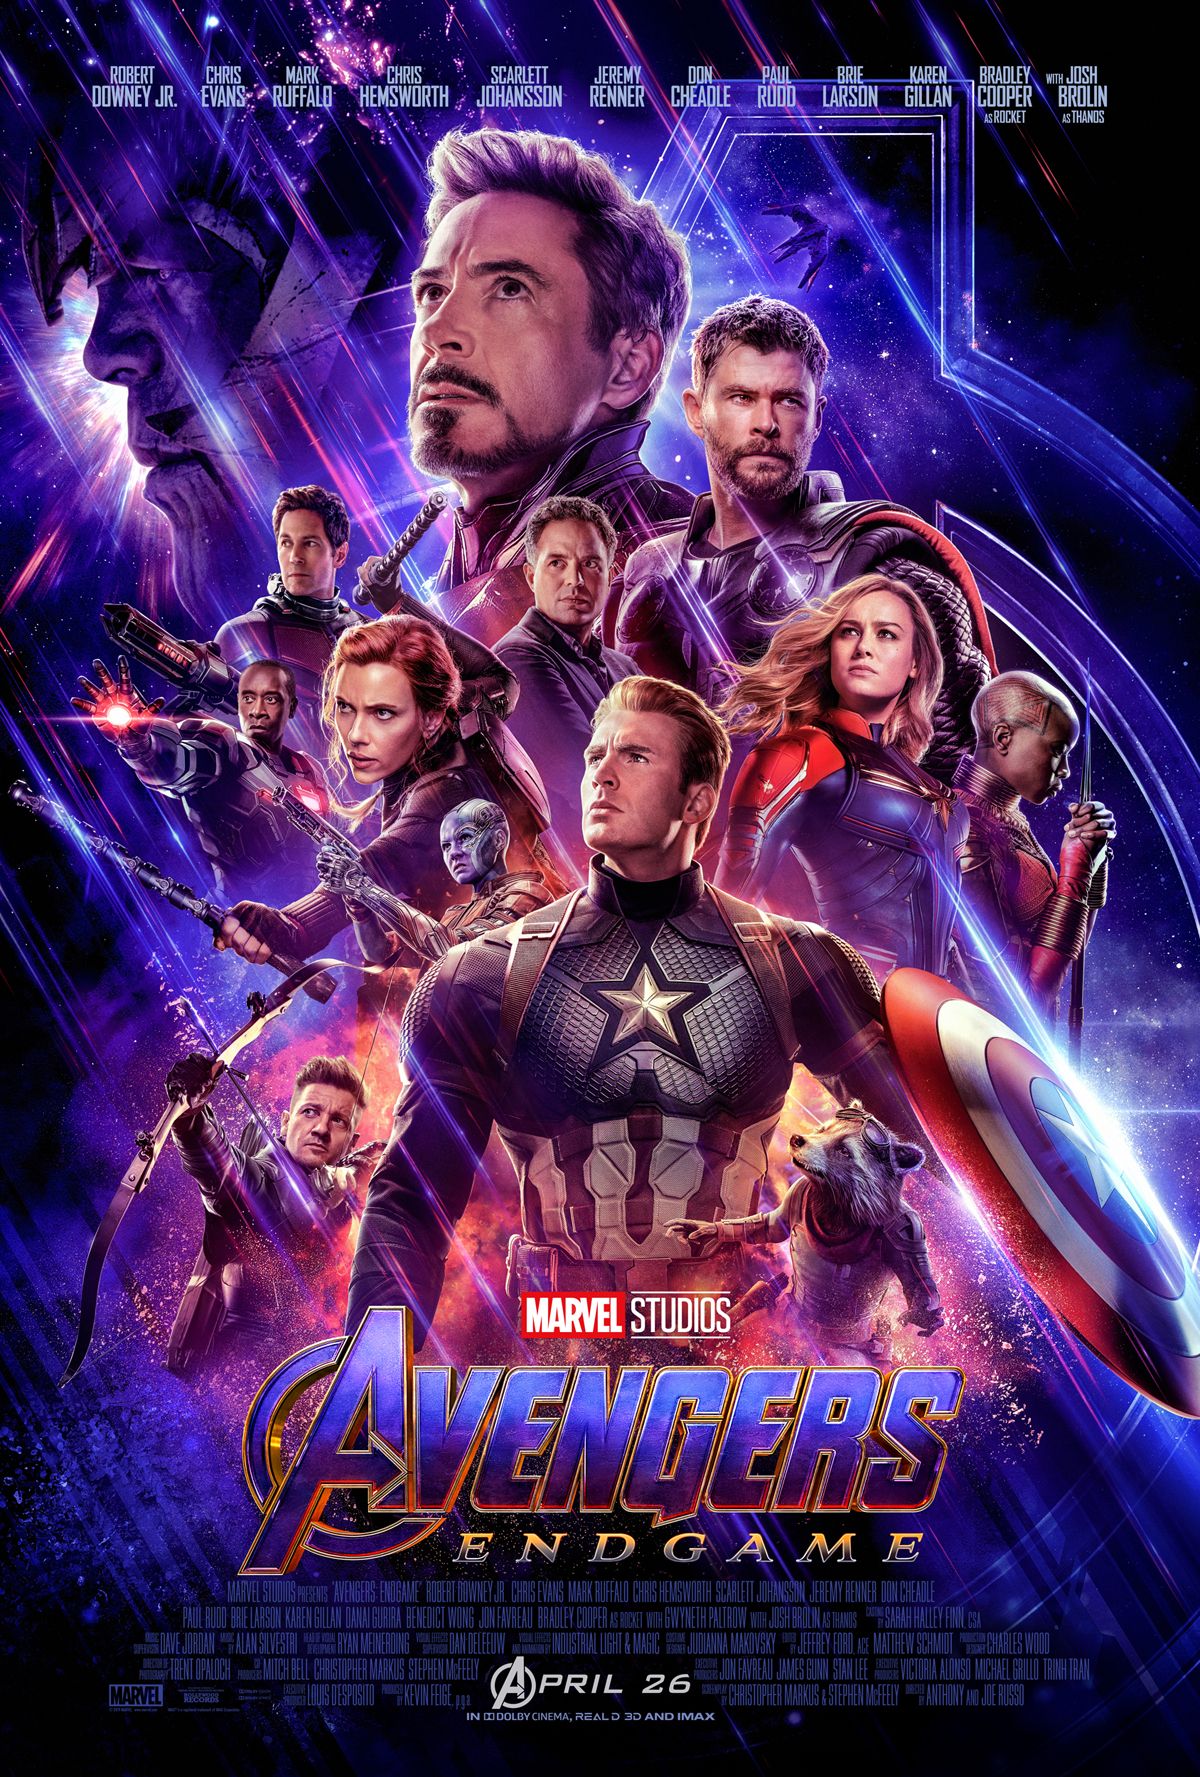 Capitán América, Iron Man, Thor y el resto de Vengadores reunidos en el cartel de Vengadores: Endgame